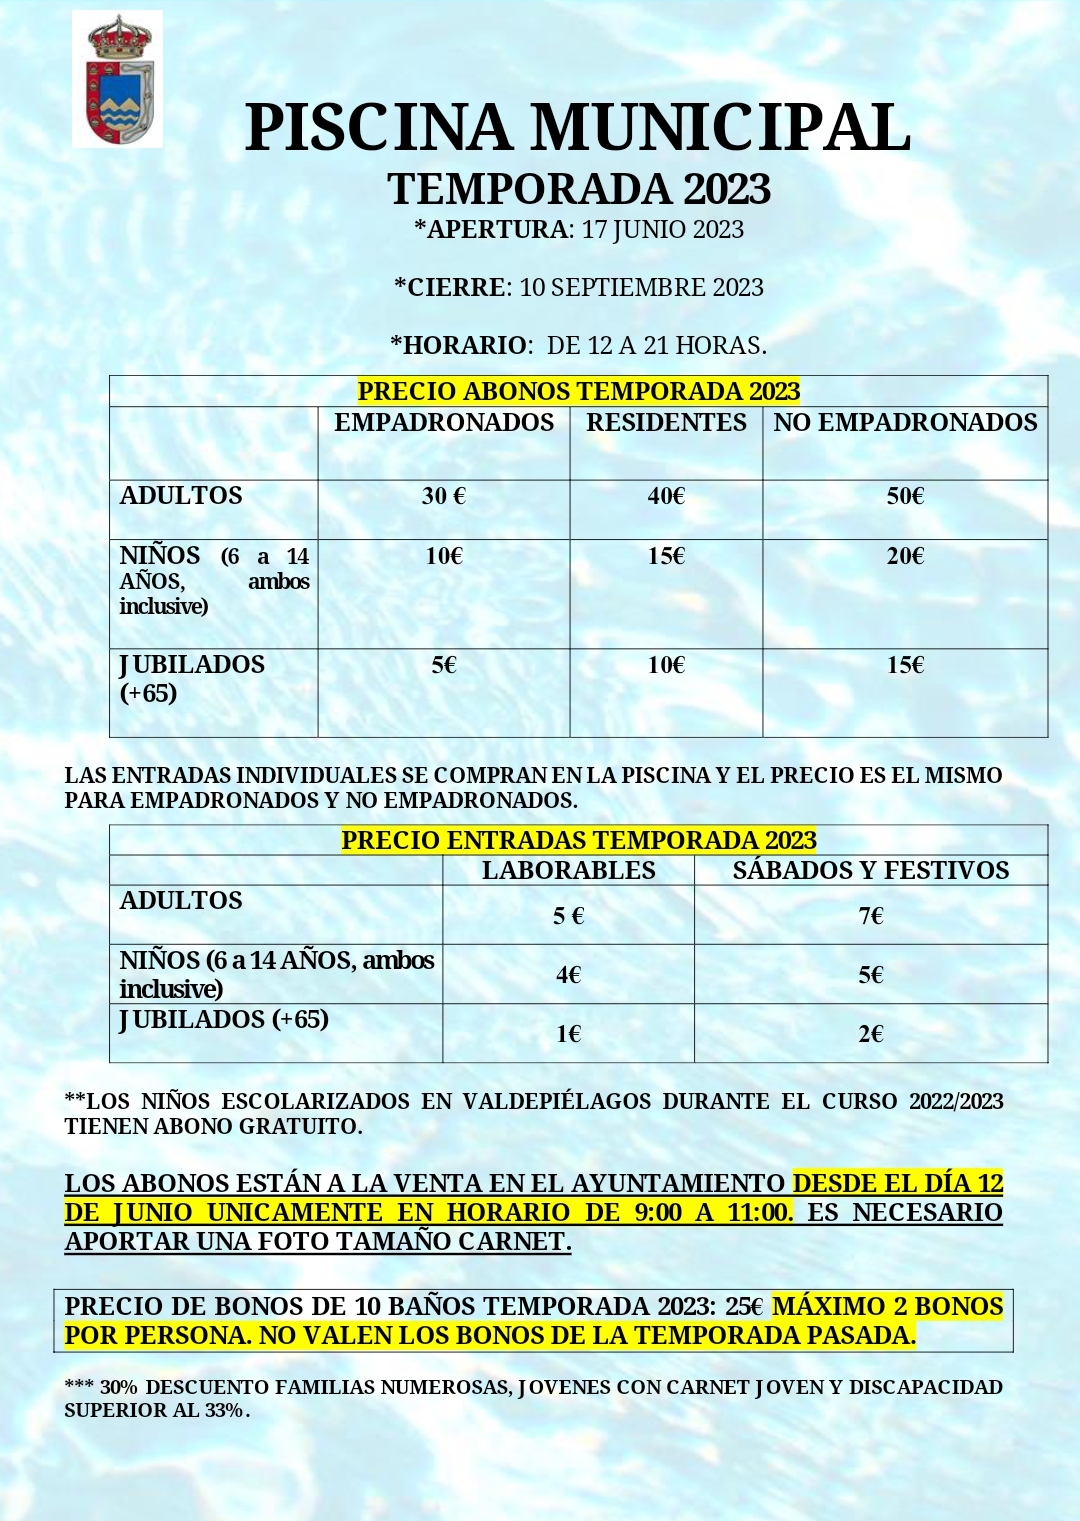 Nota informativa Televisión Digital Terrestre (TDT) - Ayuntamiento de  Navalafuente